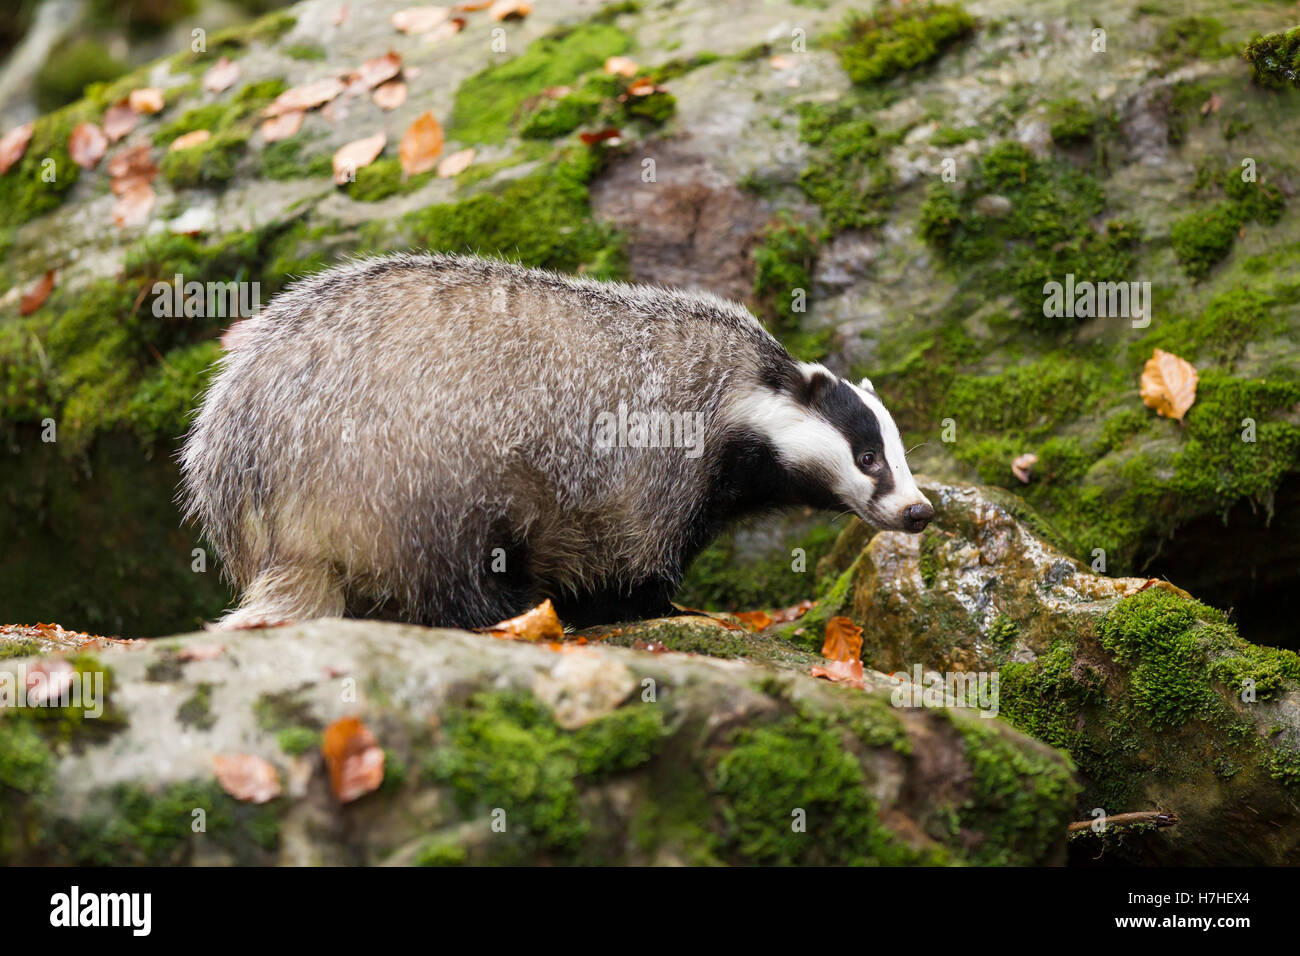 Dachs, Meles meles, European badger Stock Photo